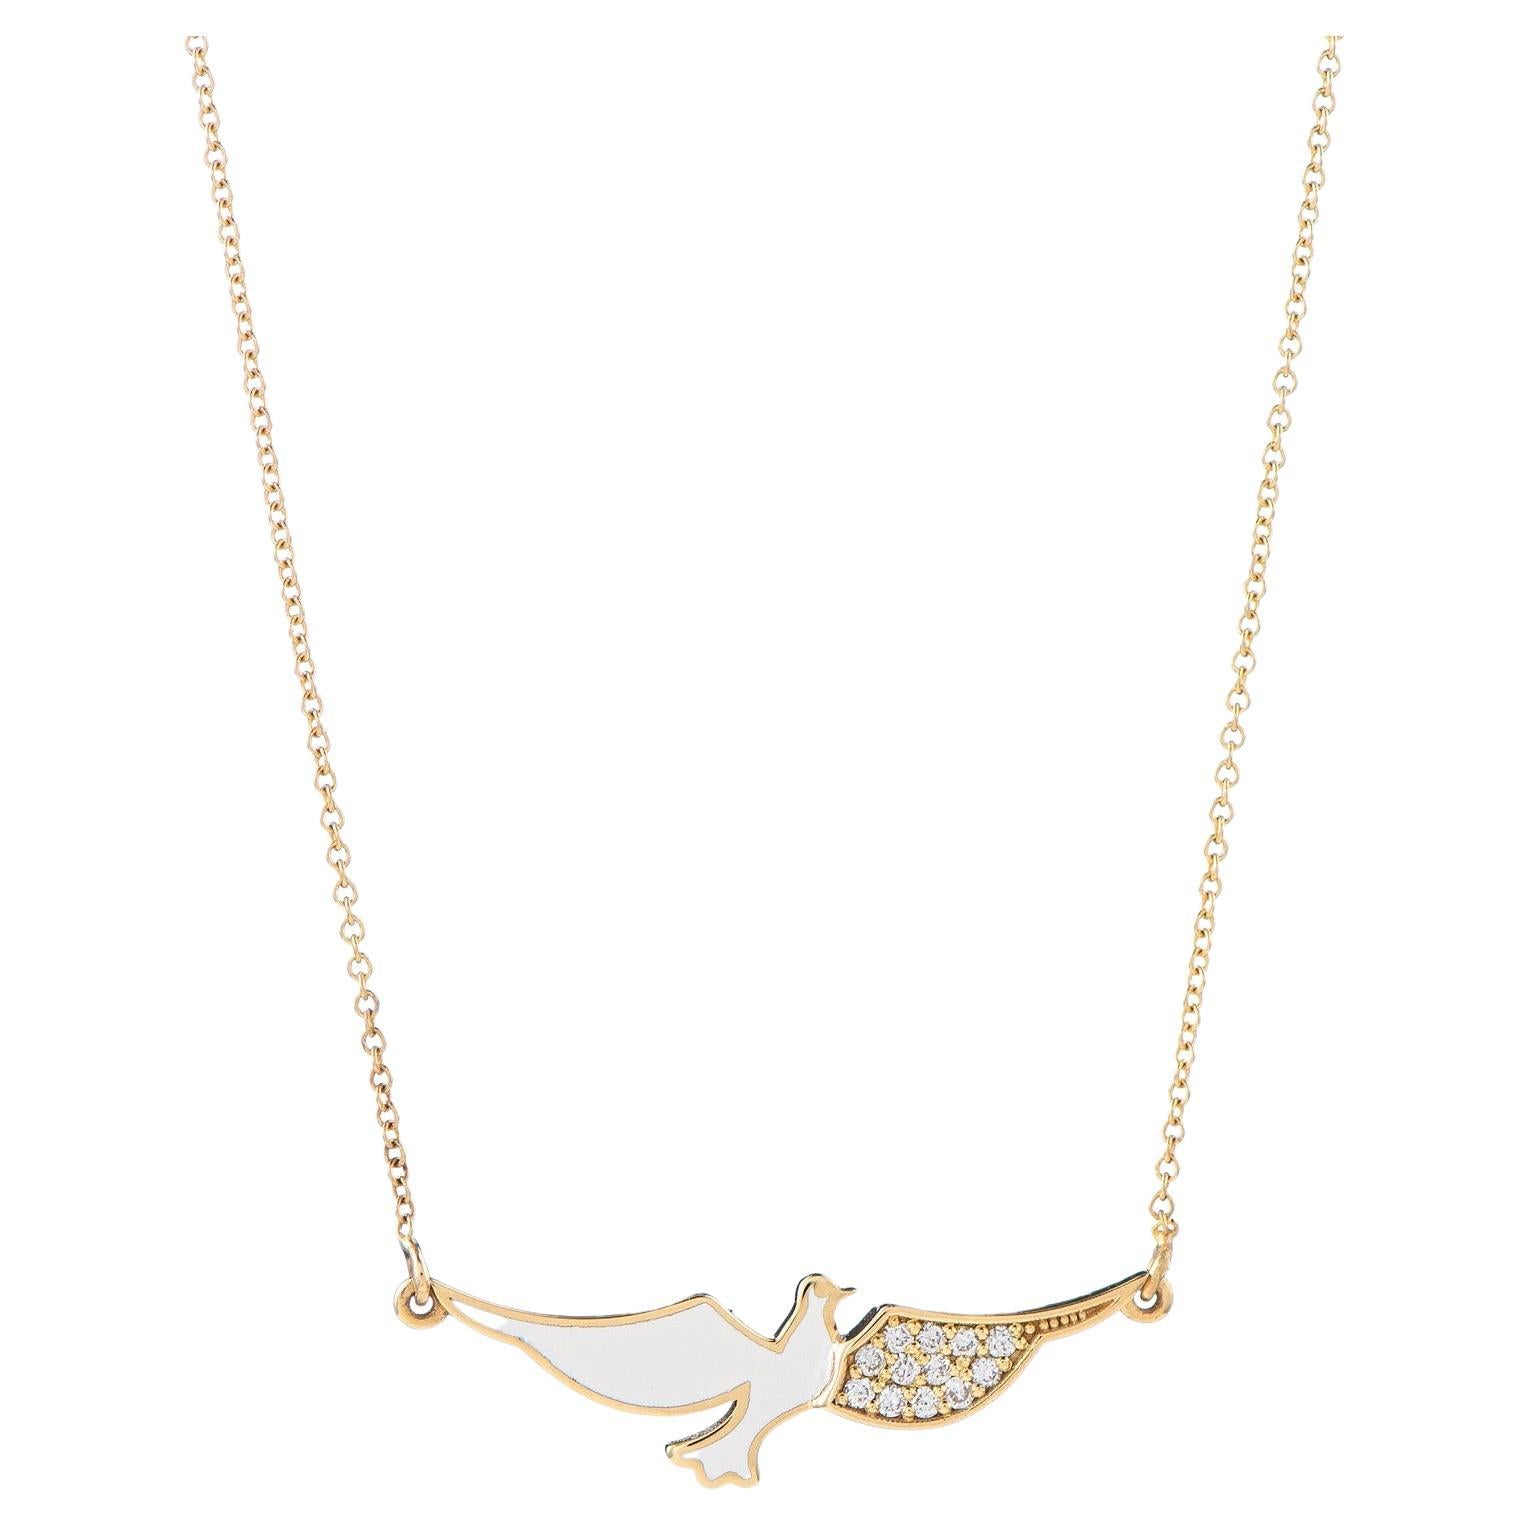 Maria Kotsoni, collier pendentif contemporain en or 18 carats avec colombe volante en émail et diamants